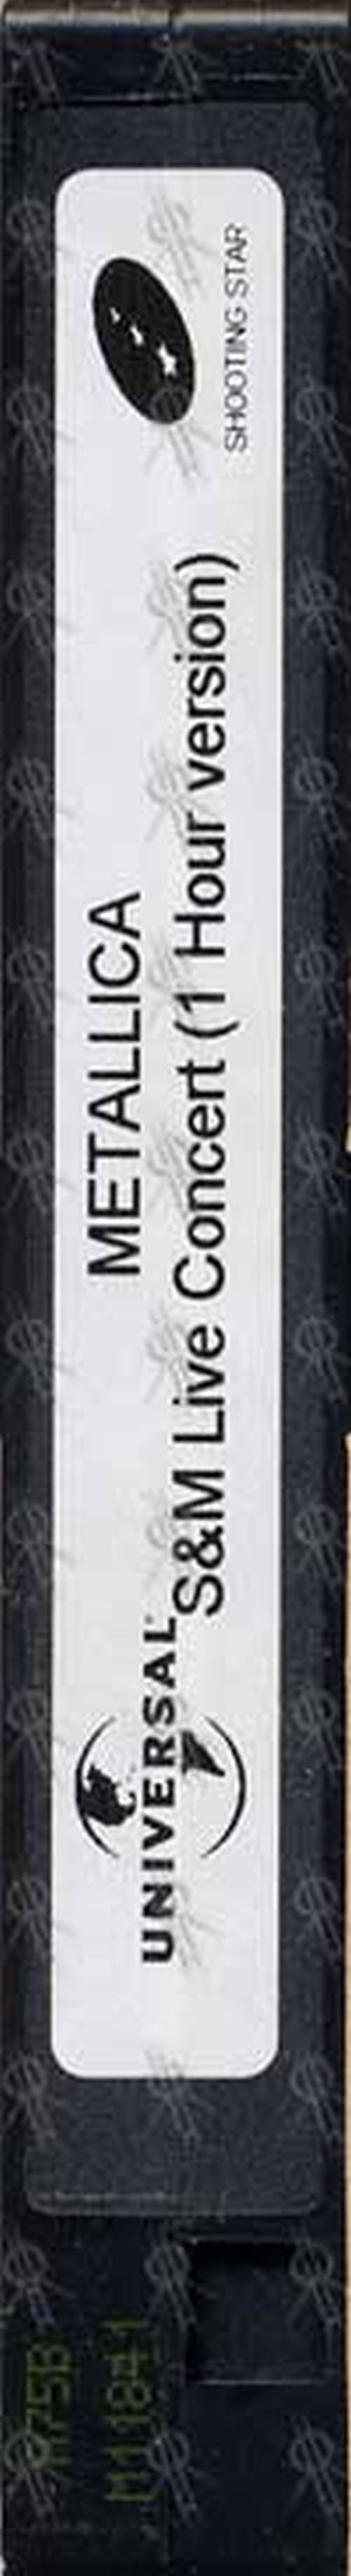 METALLICA - S & M Concert (1 Hour Version) - 1